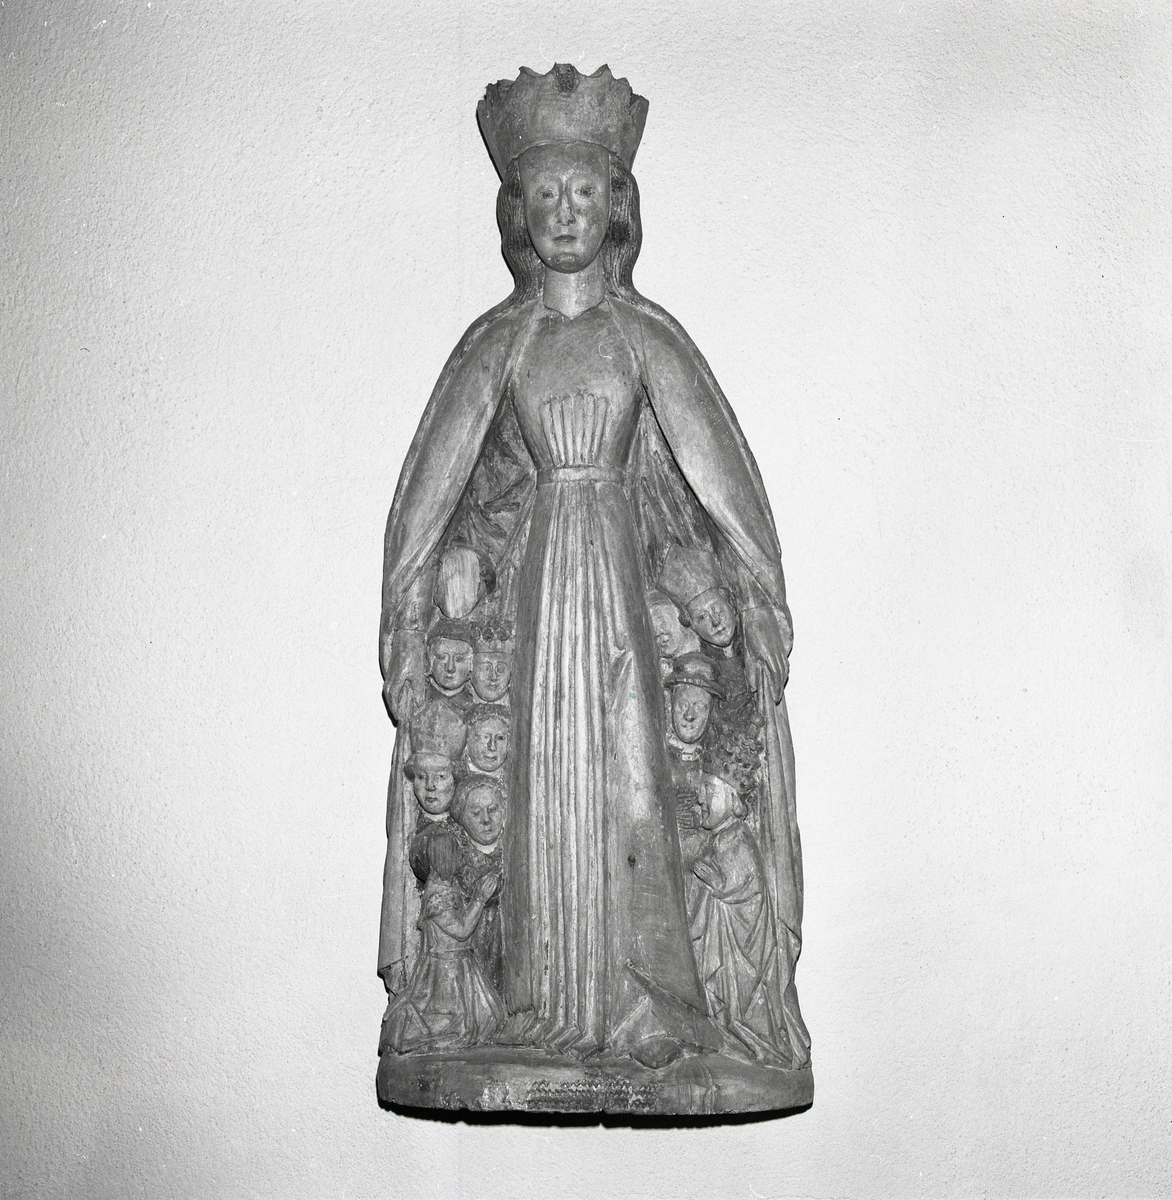 Skulptur av kvinna med många ansikten under manteln, Stöde 1972.